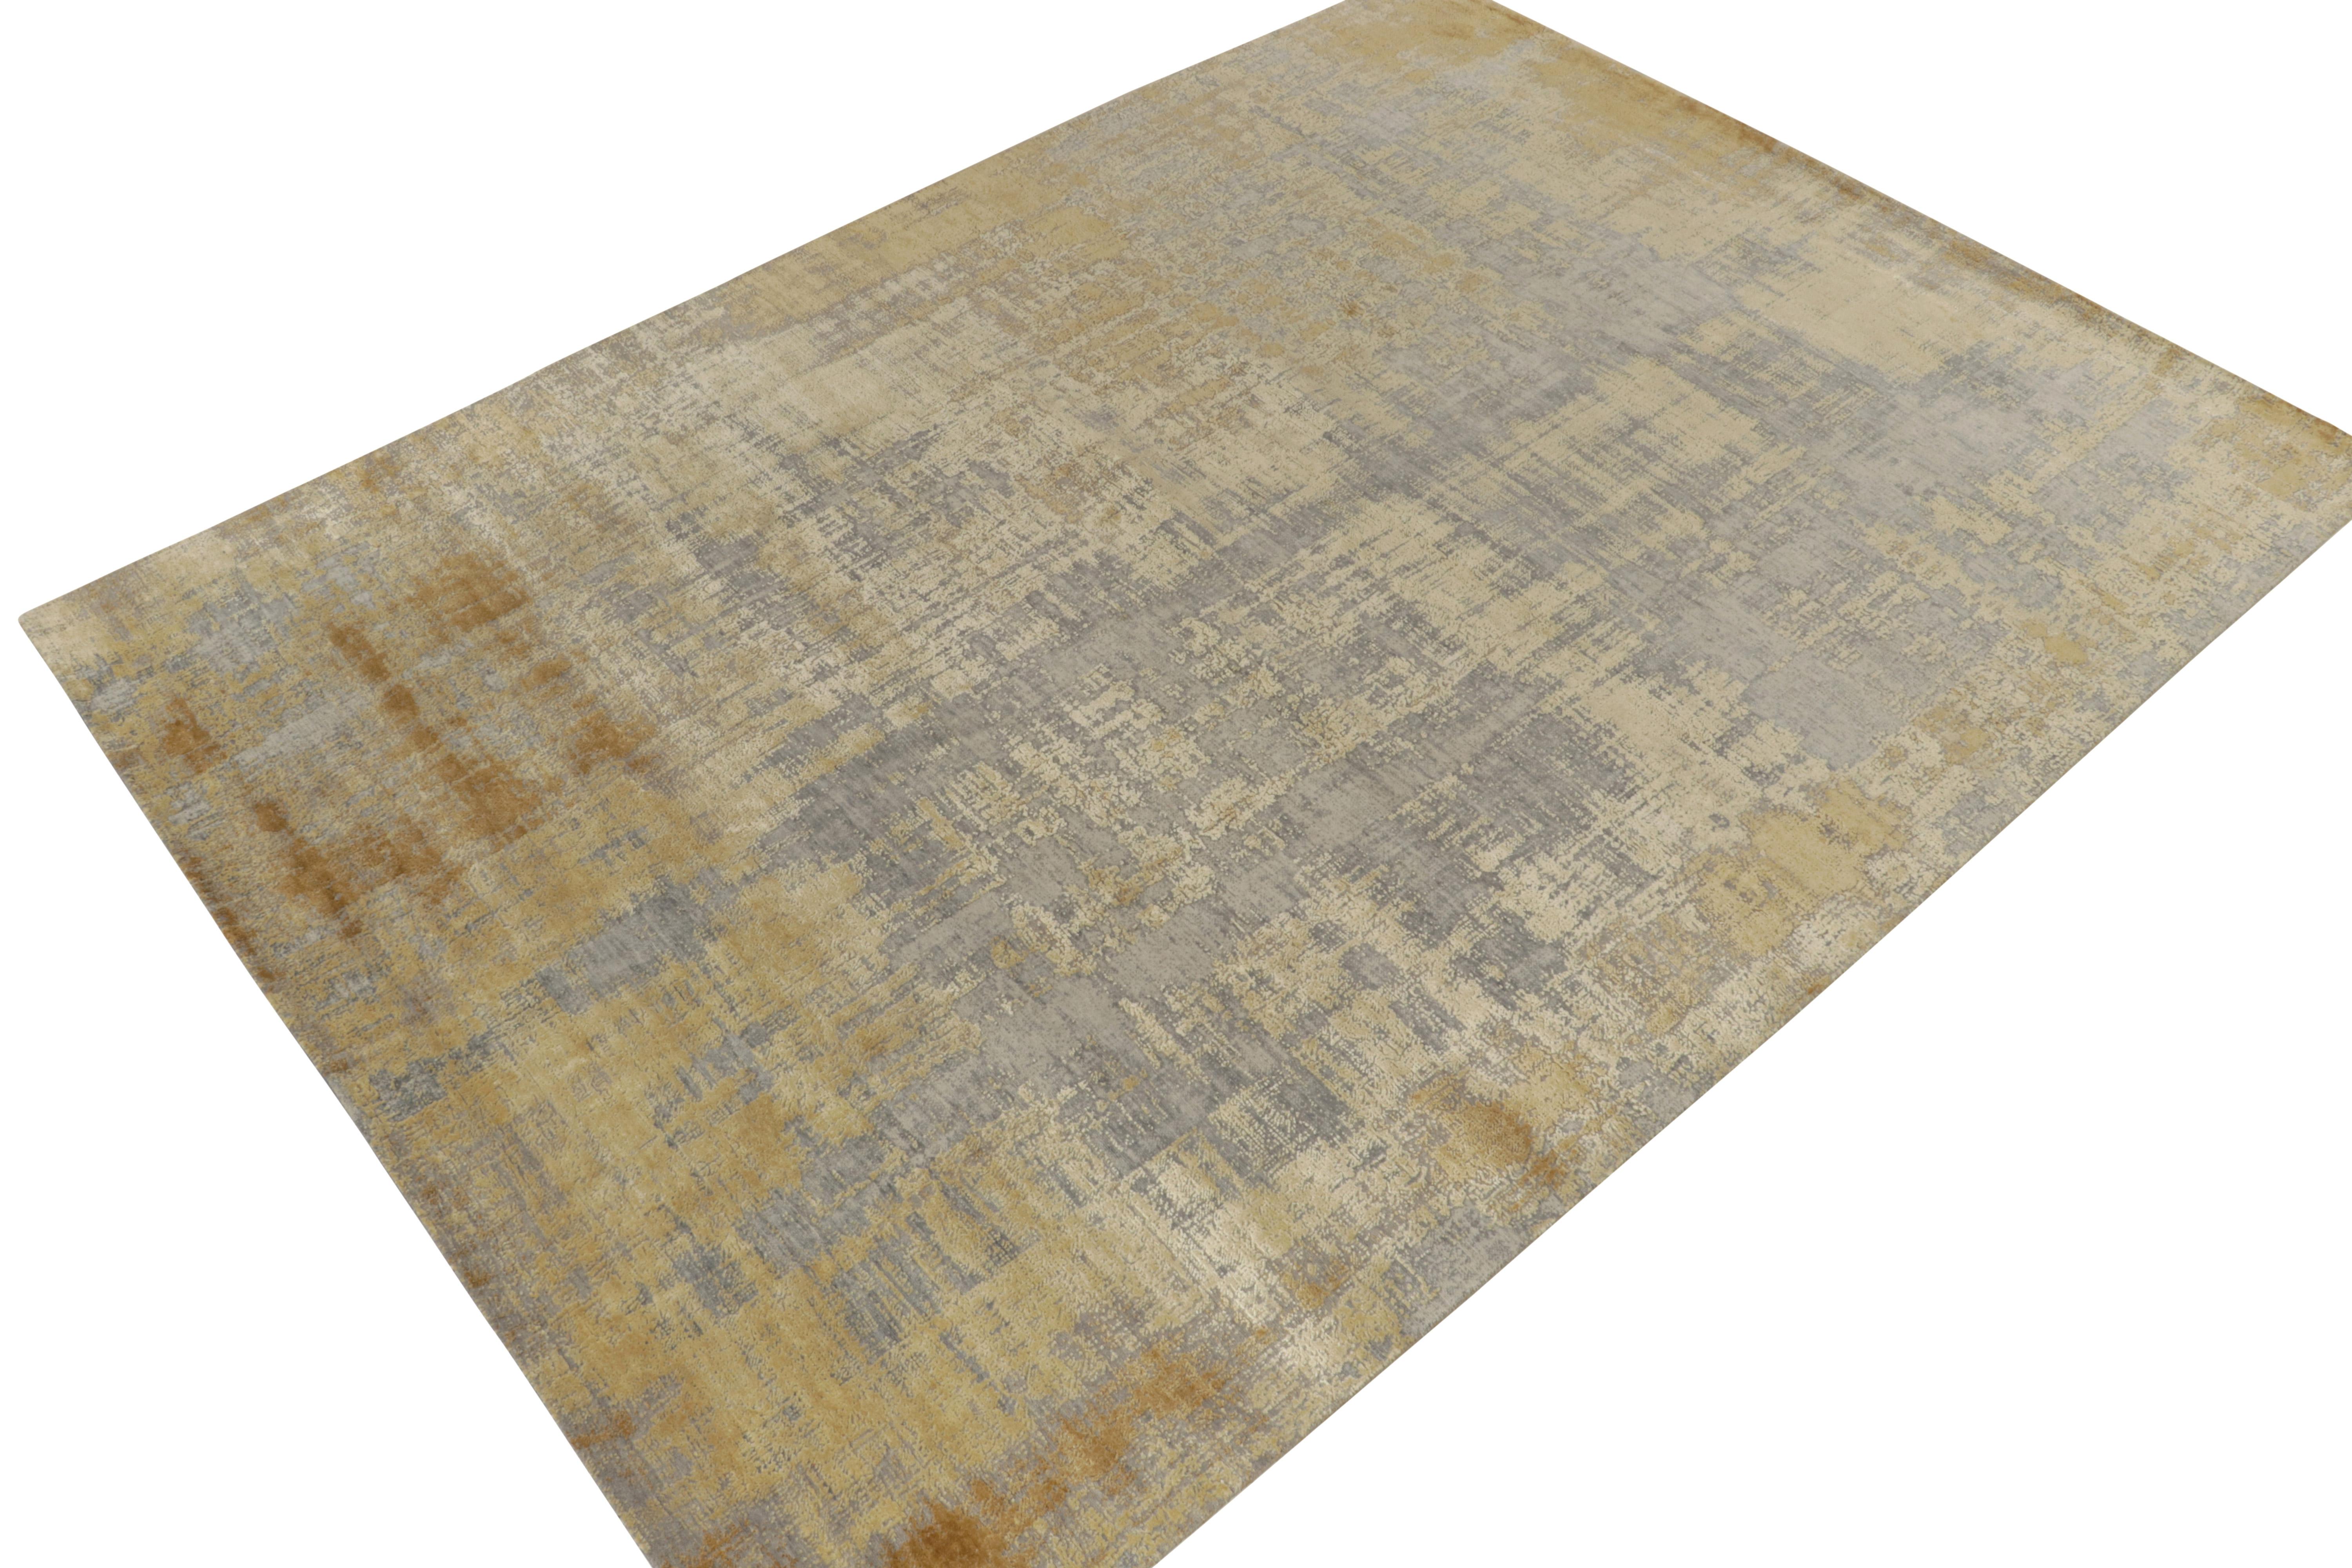 Ein abstrakter Teppich im Format 9x12, handgeknüpft aus einer luxuriösen Woll-Seiden-Mischung, gehört zu den kühnsten New & Modern-Kollektionen von Rug & Kilim. 

Das Design bevorzugt sehr malerische, abstrakte Geometrien in königlichen Tönen, von